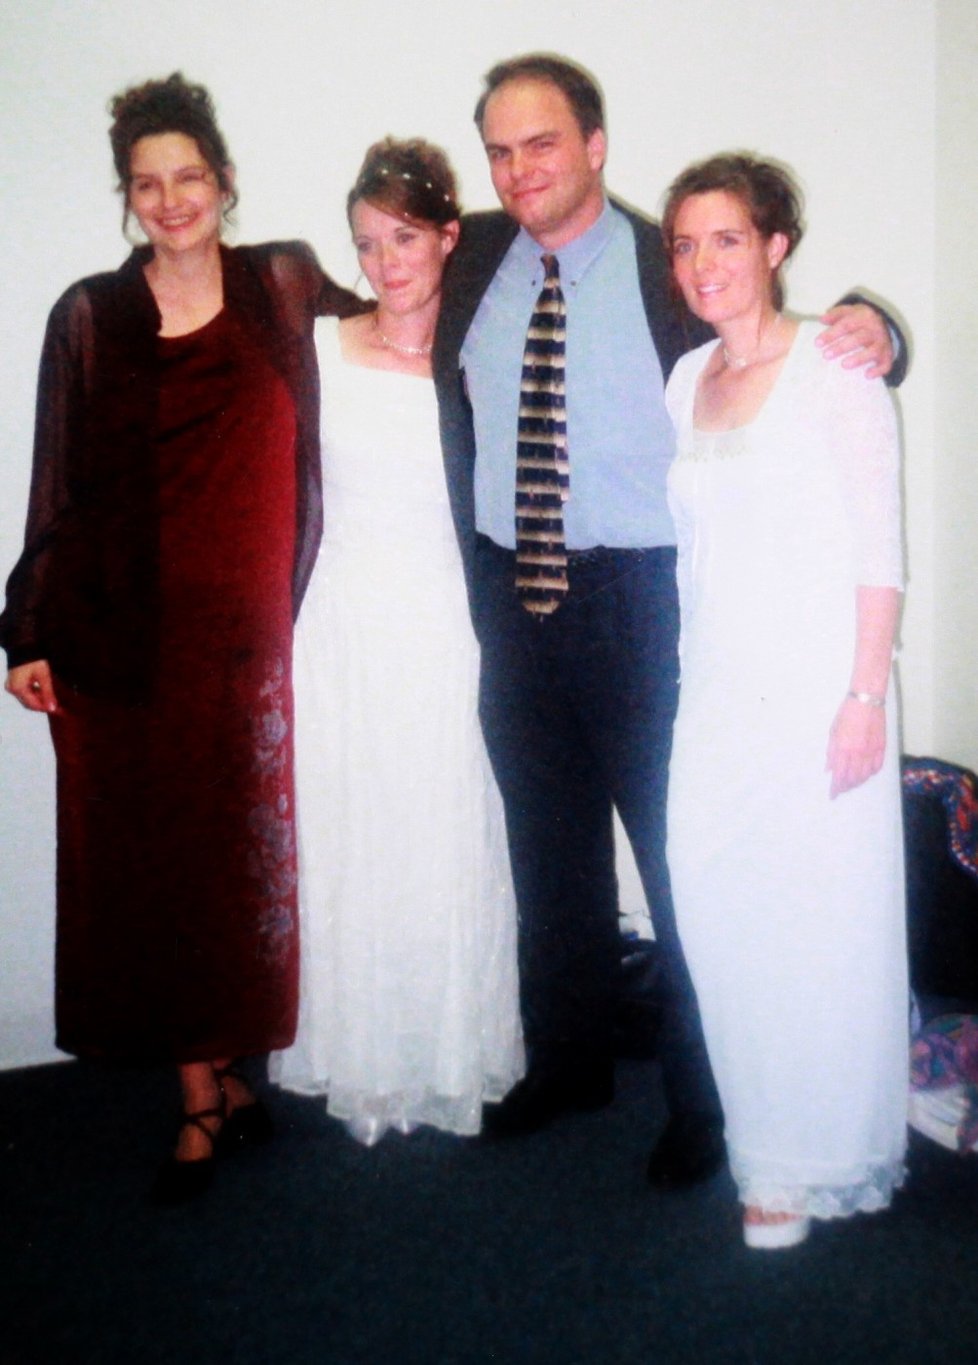 Svatba Joea s třetí ženou Valerií v roce 2000. První dvě manželky nemohly chybět.